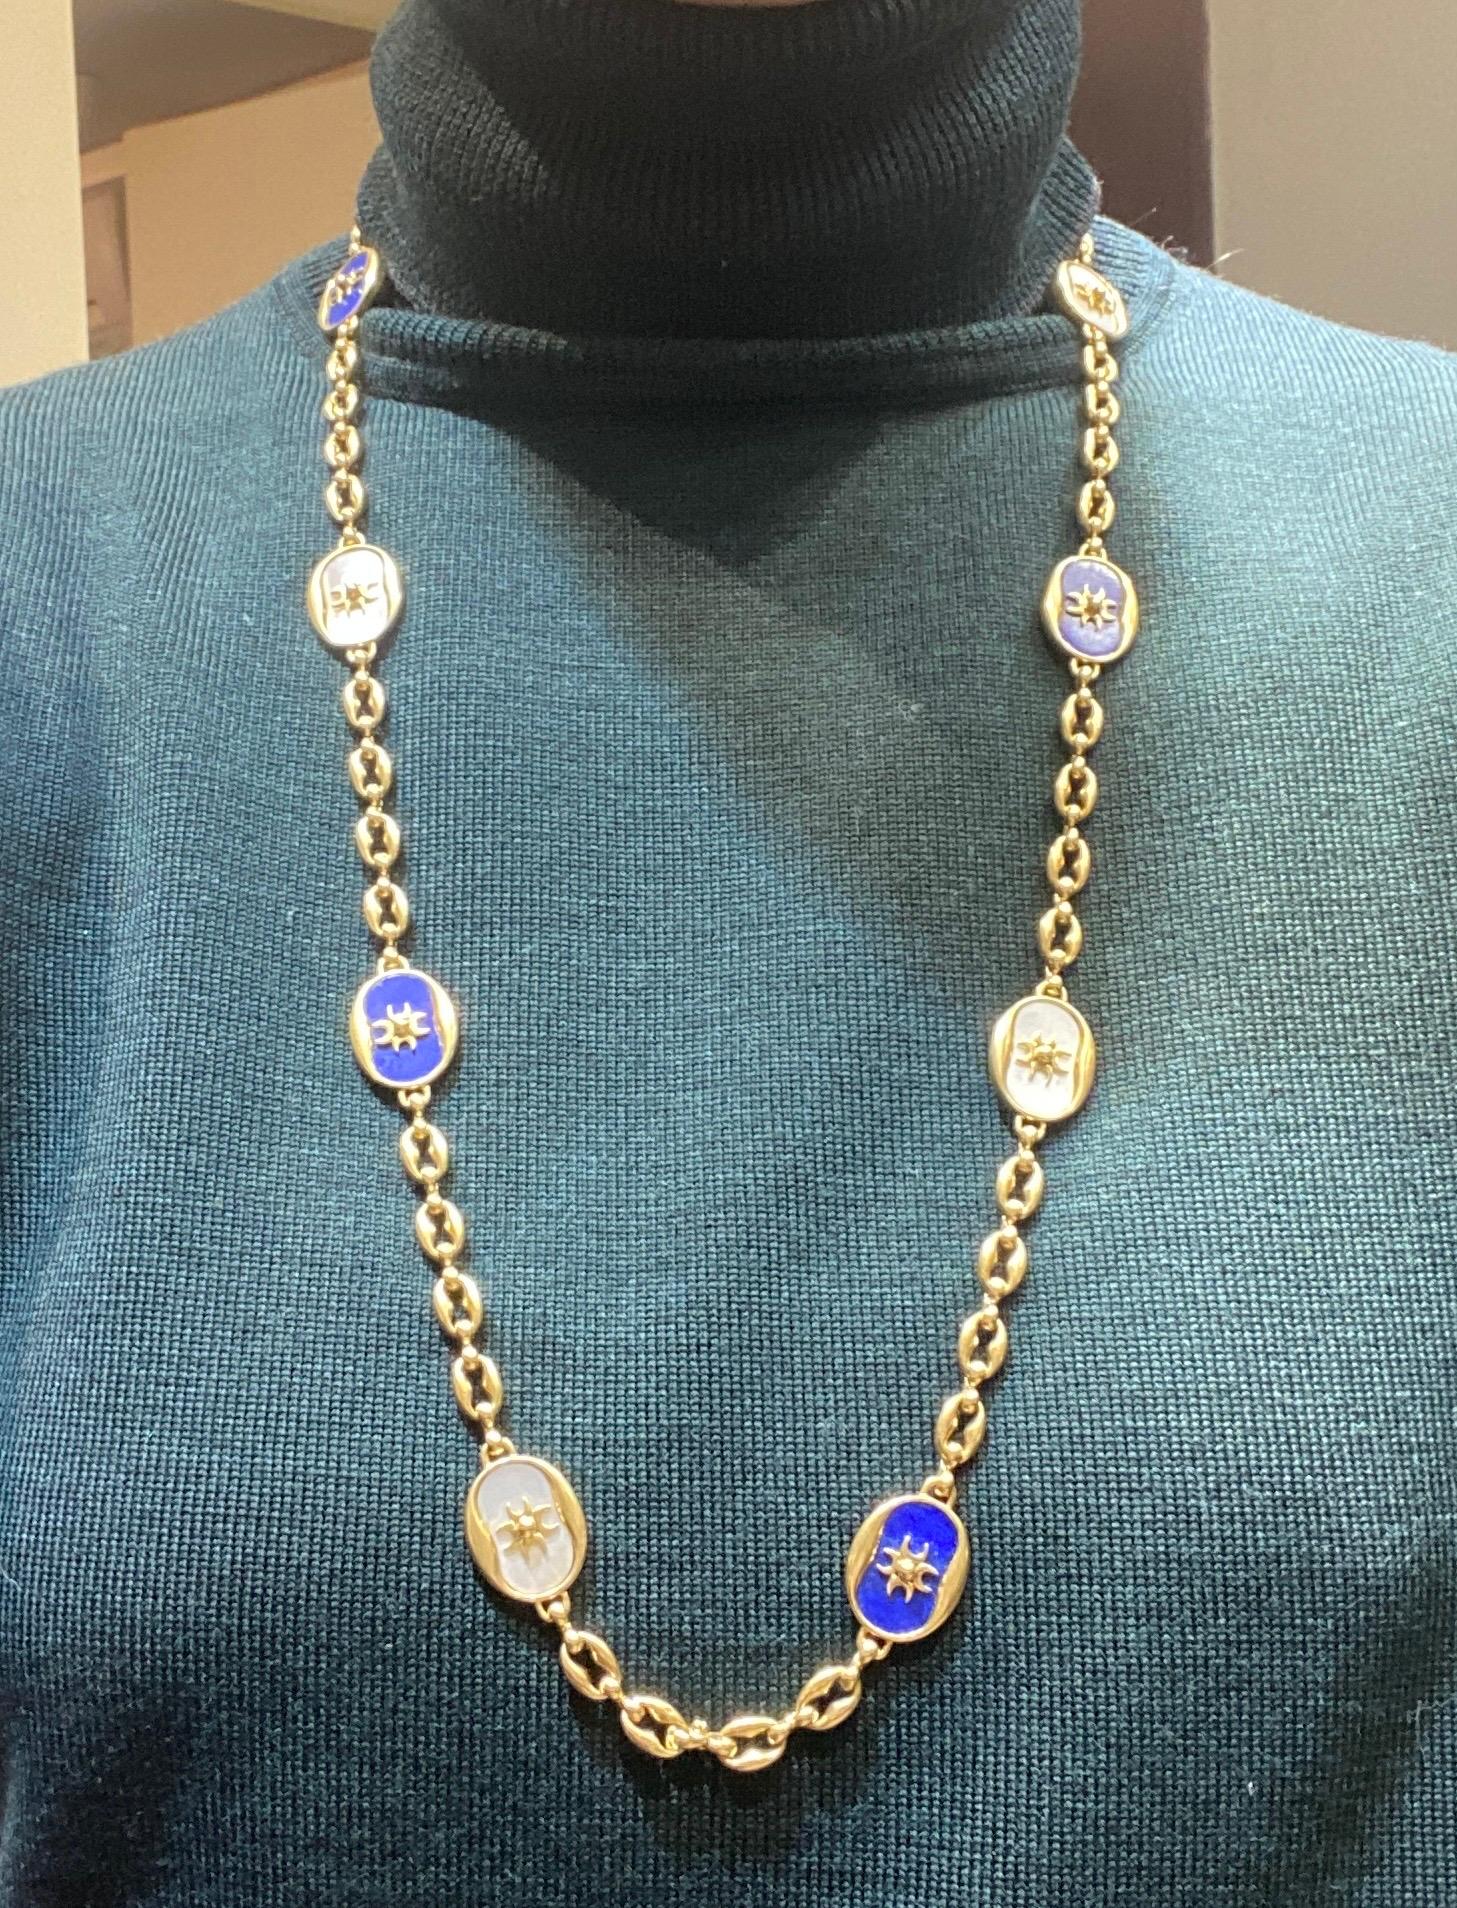 Il s'agit d'un rare collier réalisé par Jean-Jacques Cartier, l'illustre chef de la branche londonienne de l'emblématique marque Cartier. La chaîne est marquée de l'insigne distinctif de Cartier lui-même.

Cette chaîne en or 18 carats est parsemée